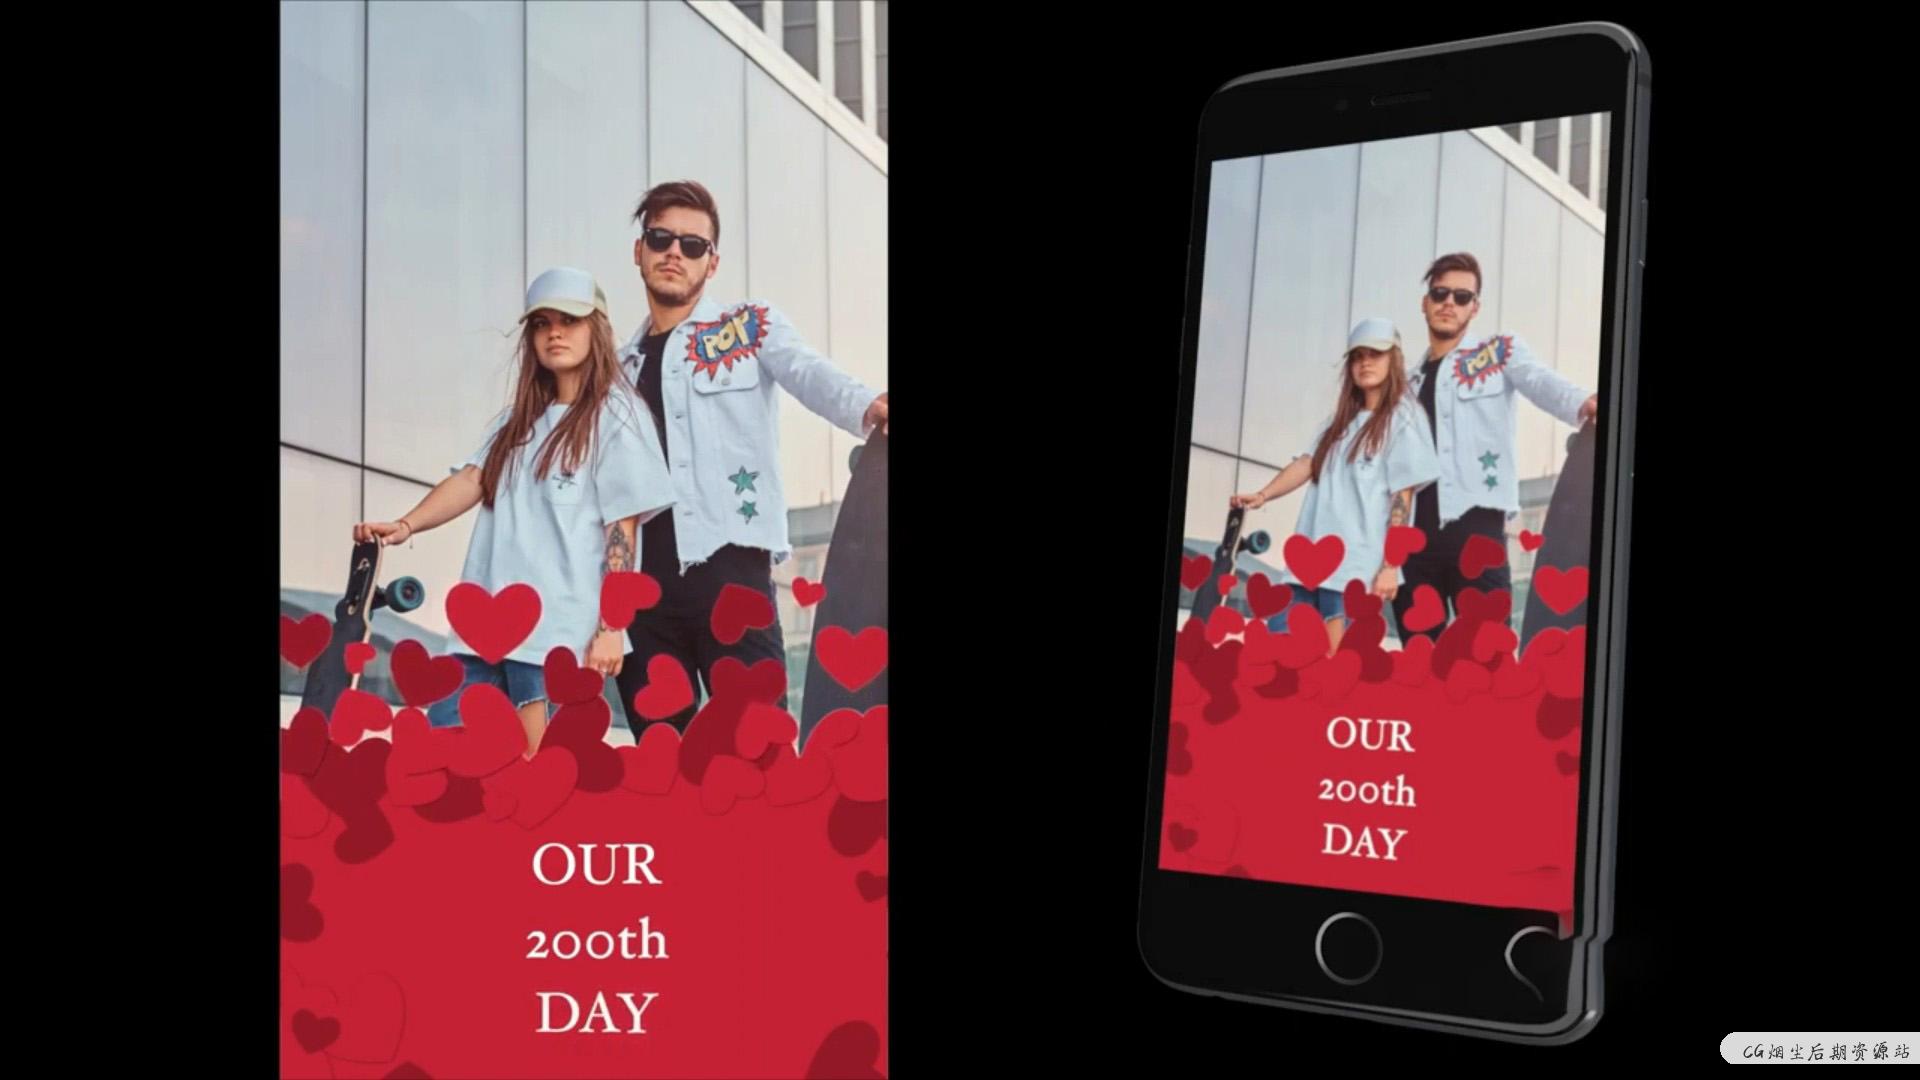 fcpx竖屏模板 婚礼爱情浪漫适用手机短视频 介绍